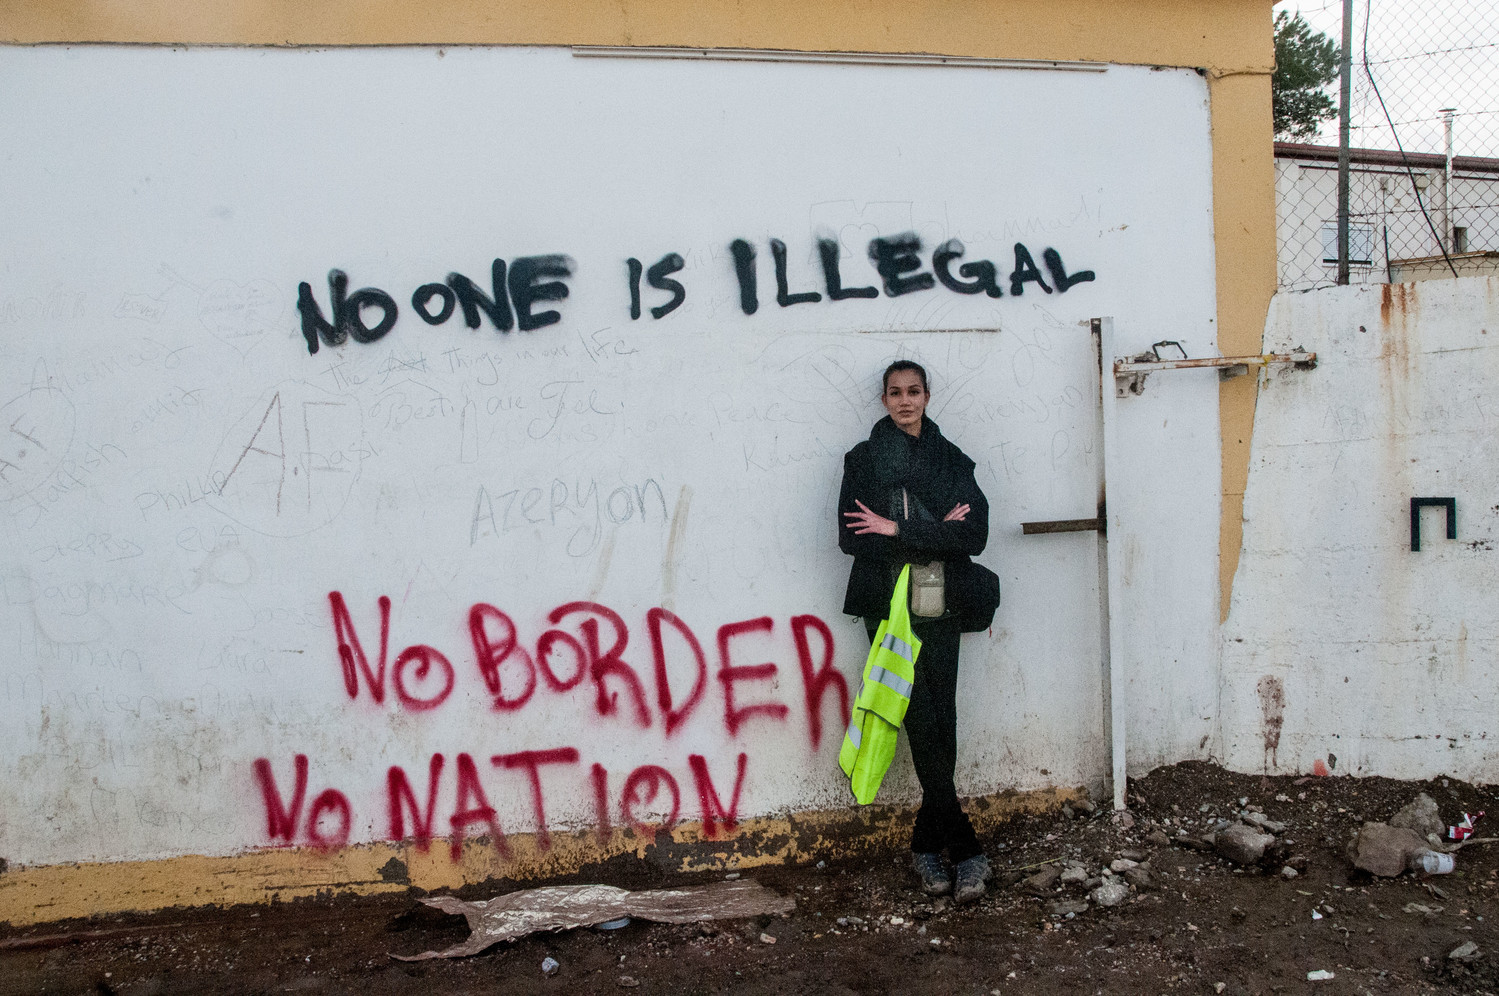 Personas refugiadas que llegan a Lesvos (Grecia) desde Turquía. Una mujer se reclina sobre una pared que pone ninguna persona es ilegal.